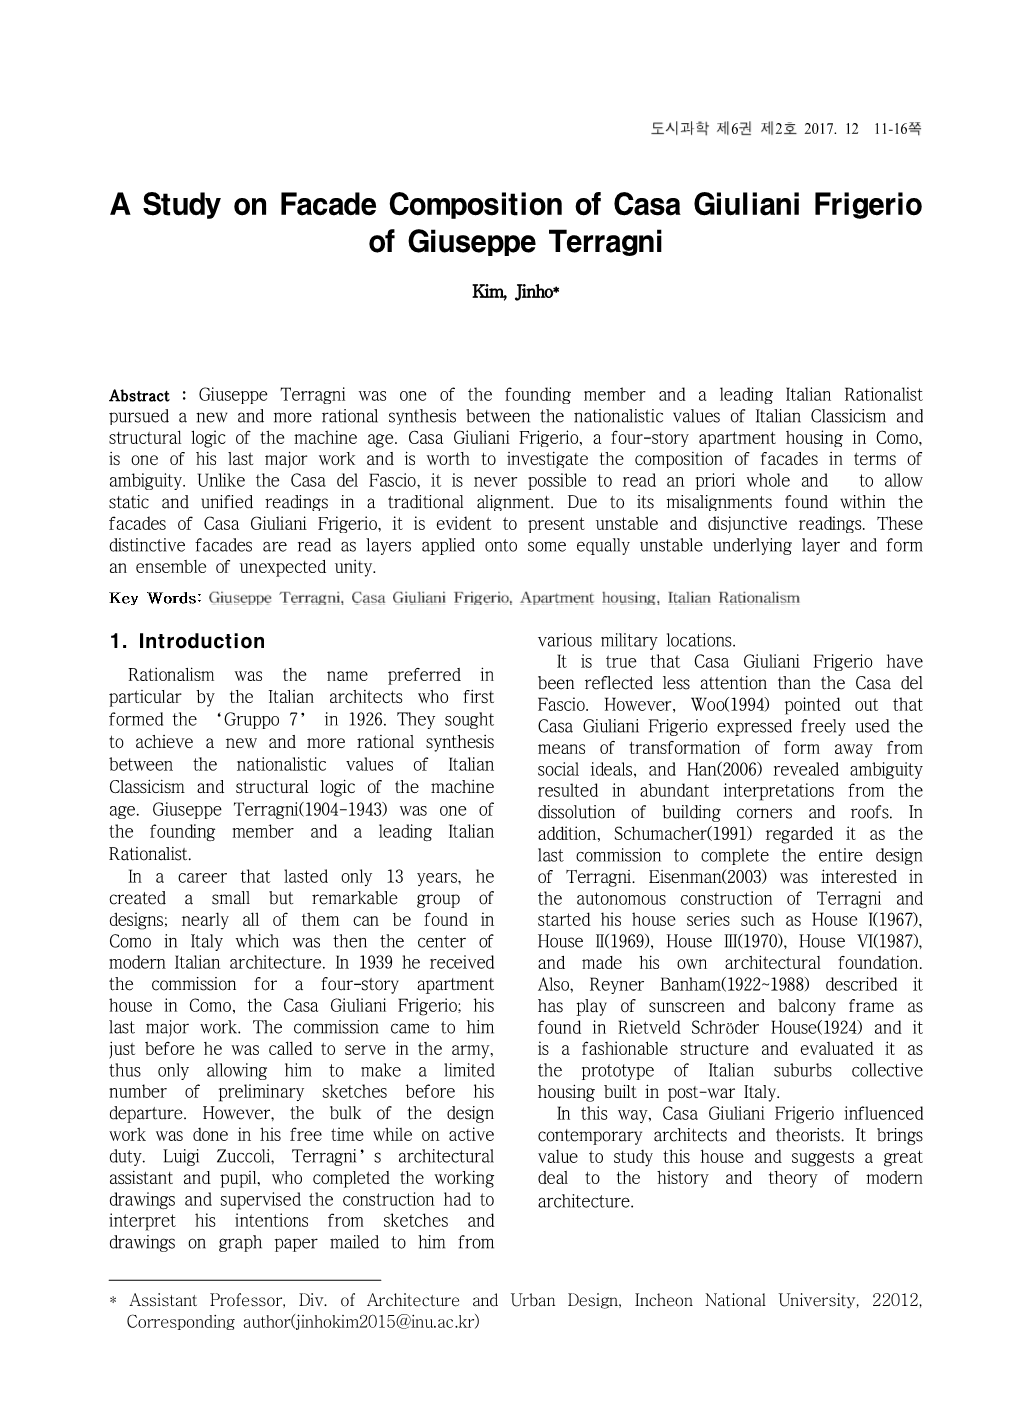 A Study on Facade Composition of Casa Giuliani Frigerio of Giuseppe Terragni